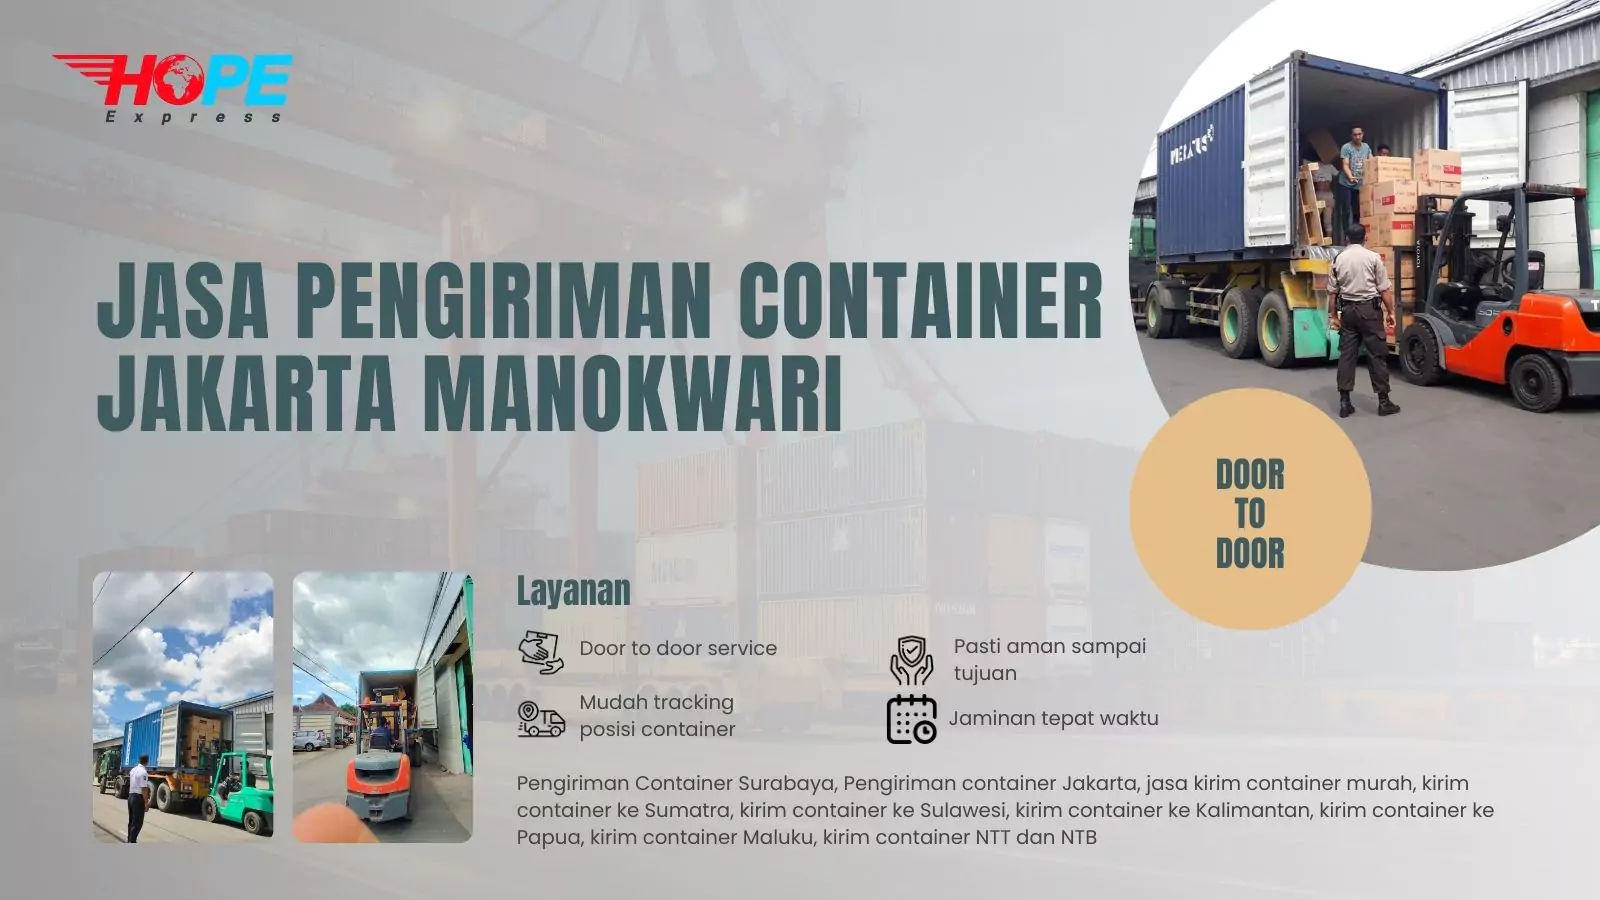 Jasa Pengiriman Container Jakarta Manokwari